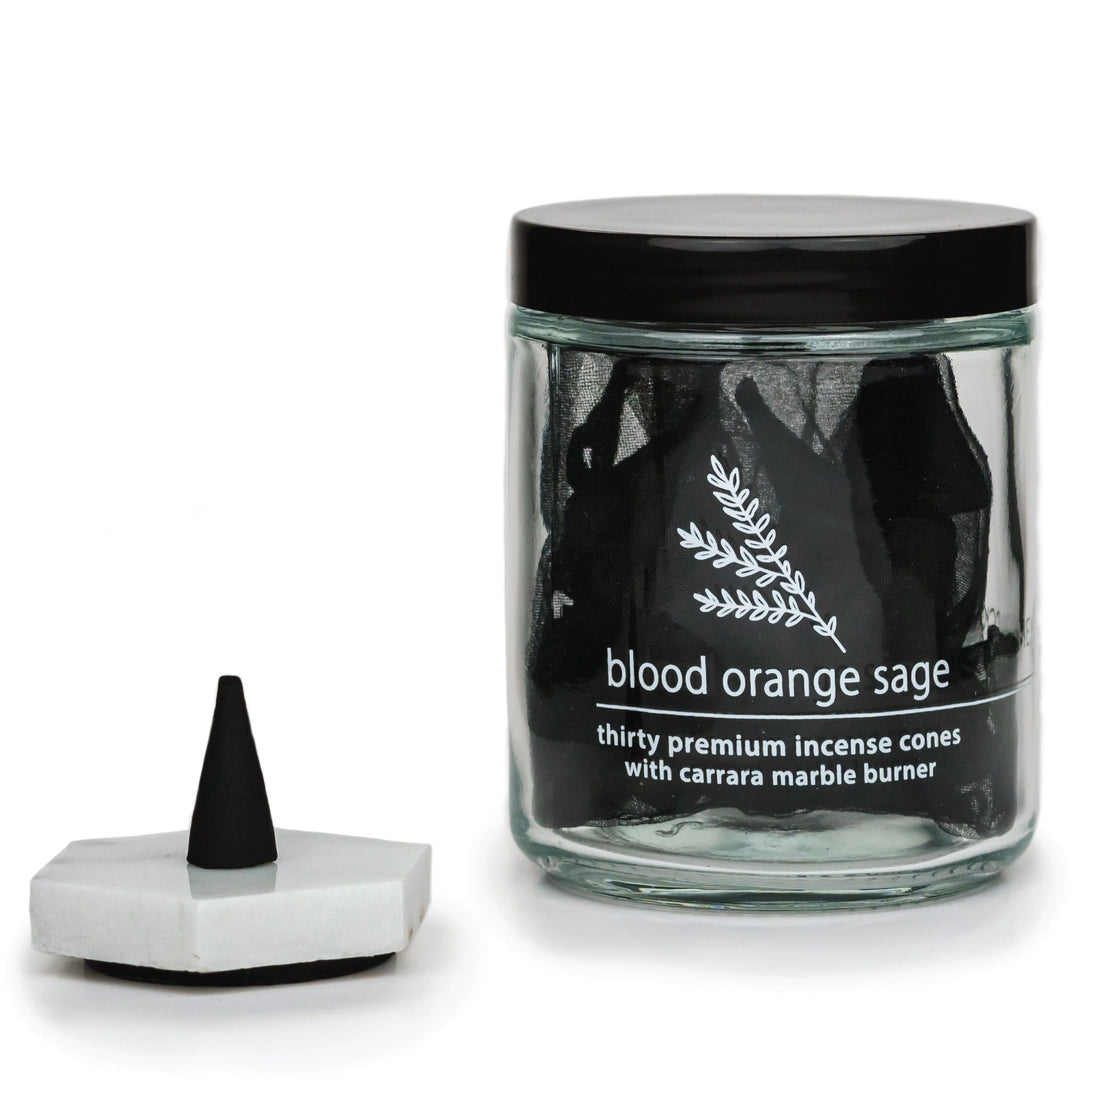 Incense Cones & Marble Burner - Blood Orange Sage